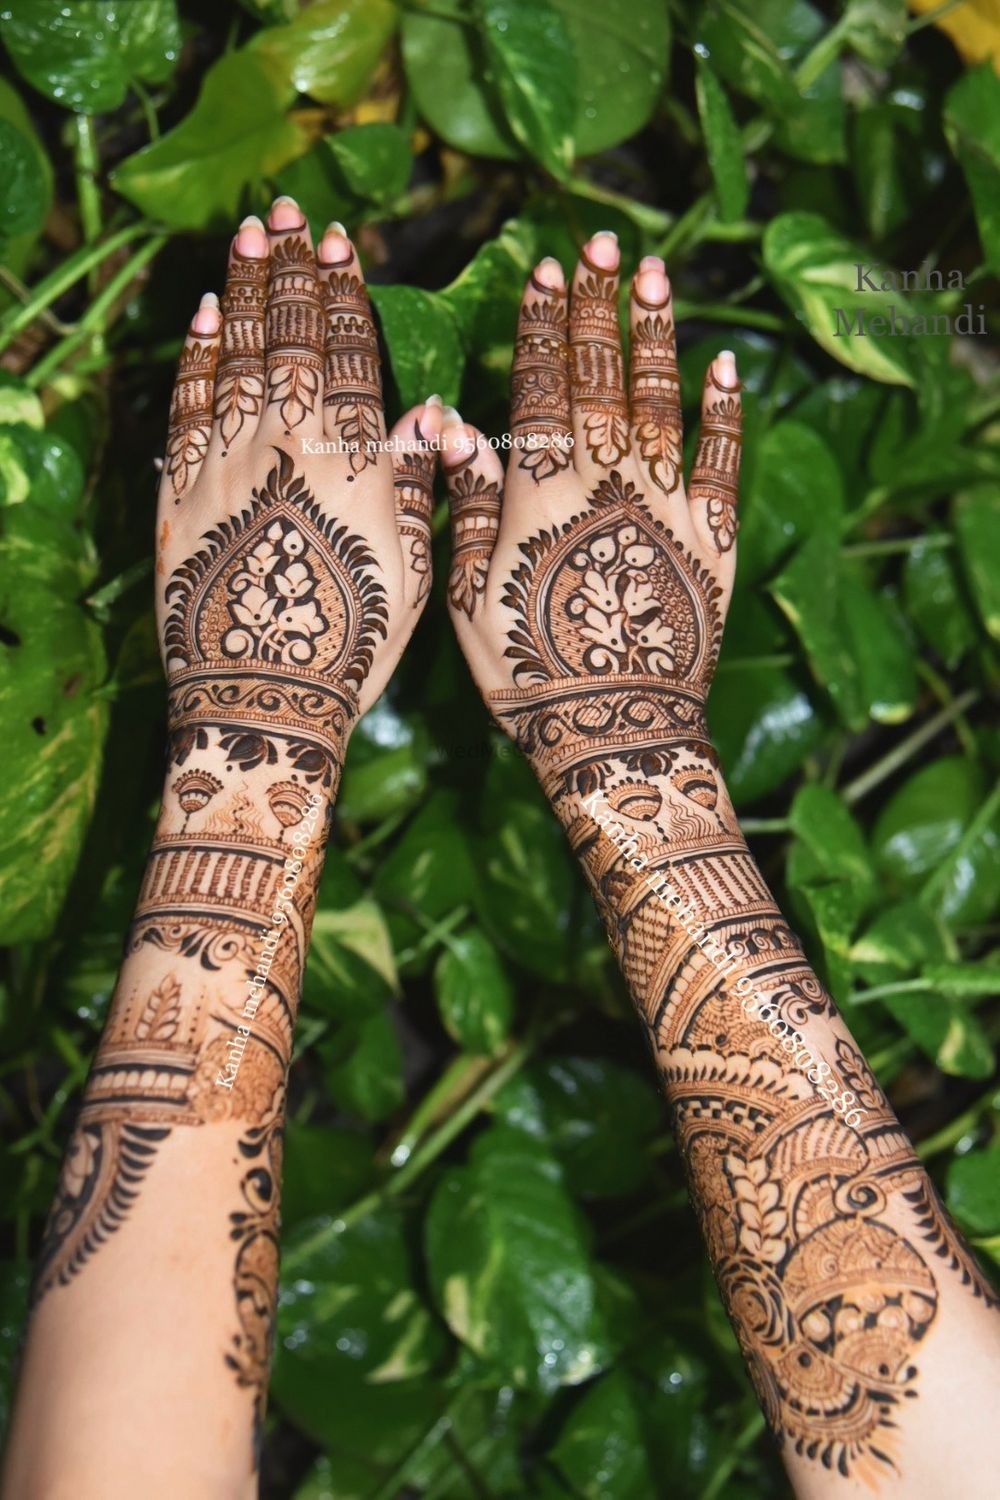 Photo From Henna Design - By Kanha Mehendi Art